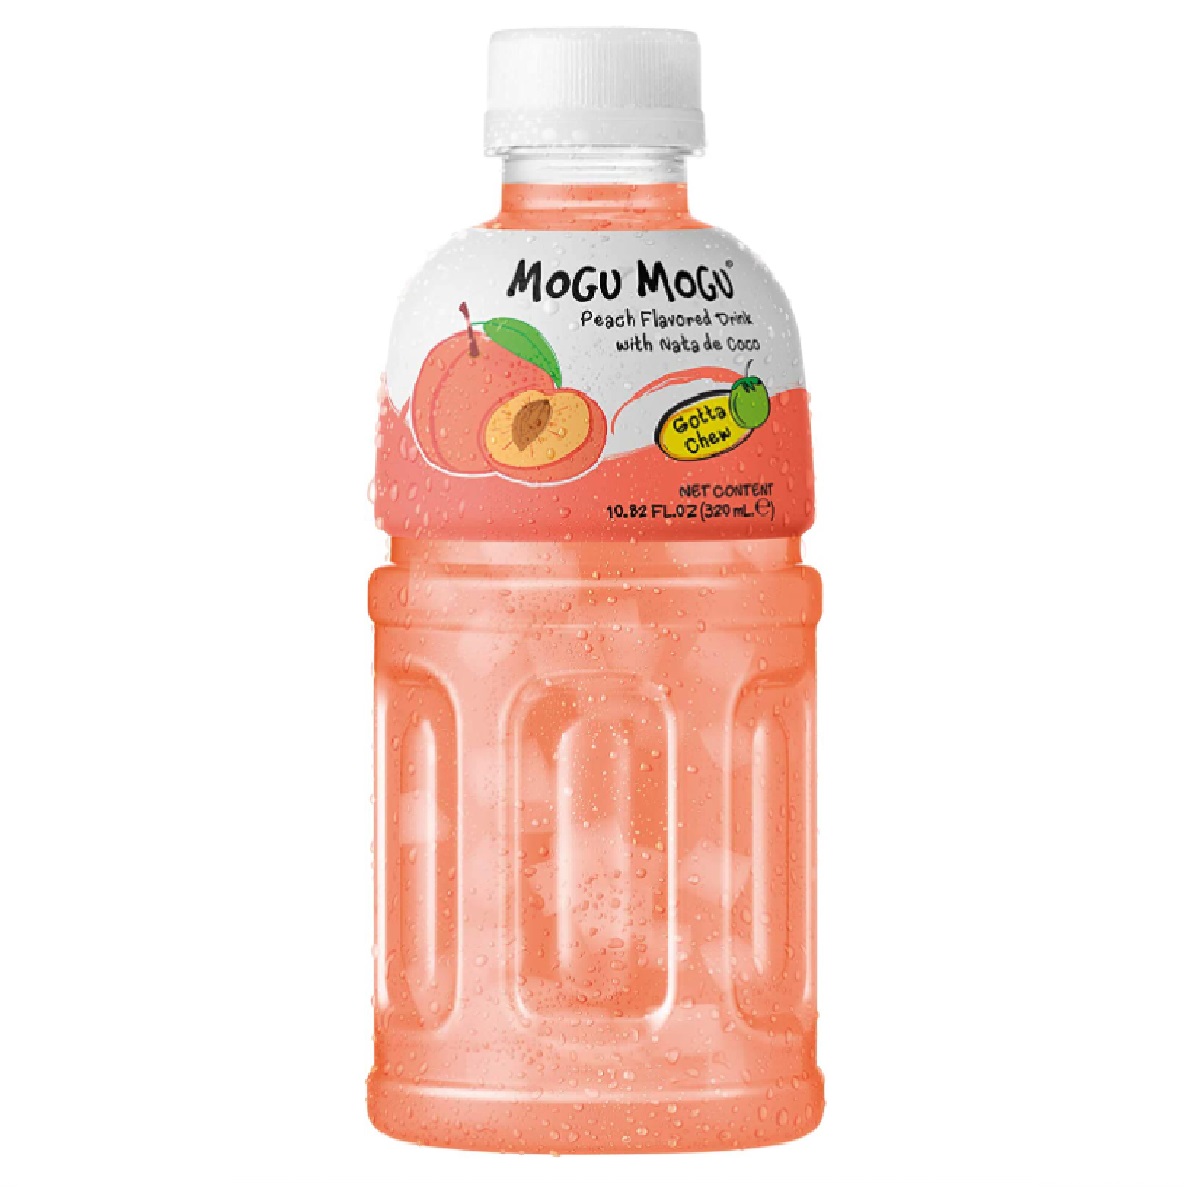 Mogu Mogu Peach Flavored Drink with Nata de Coco 320ml